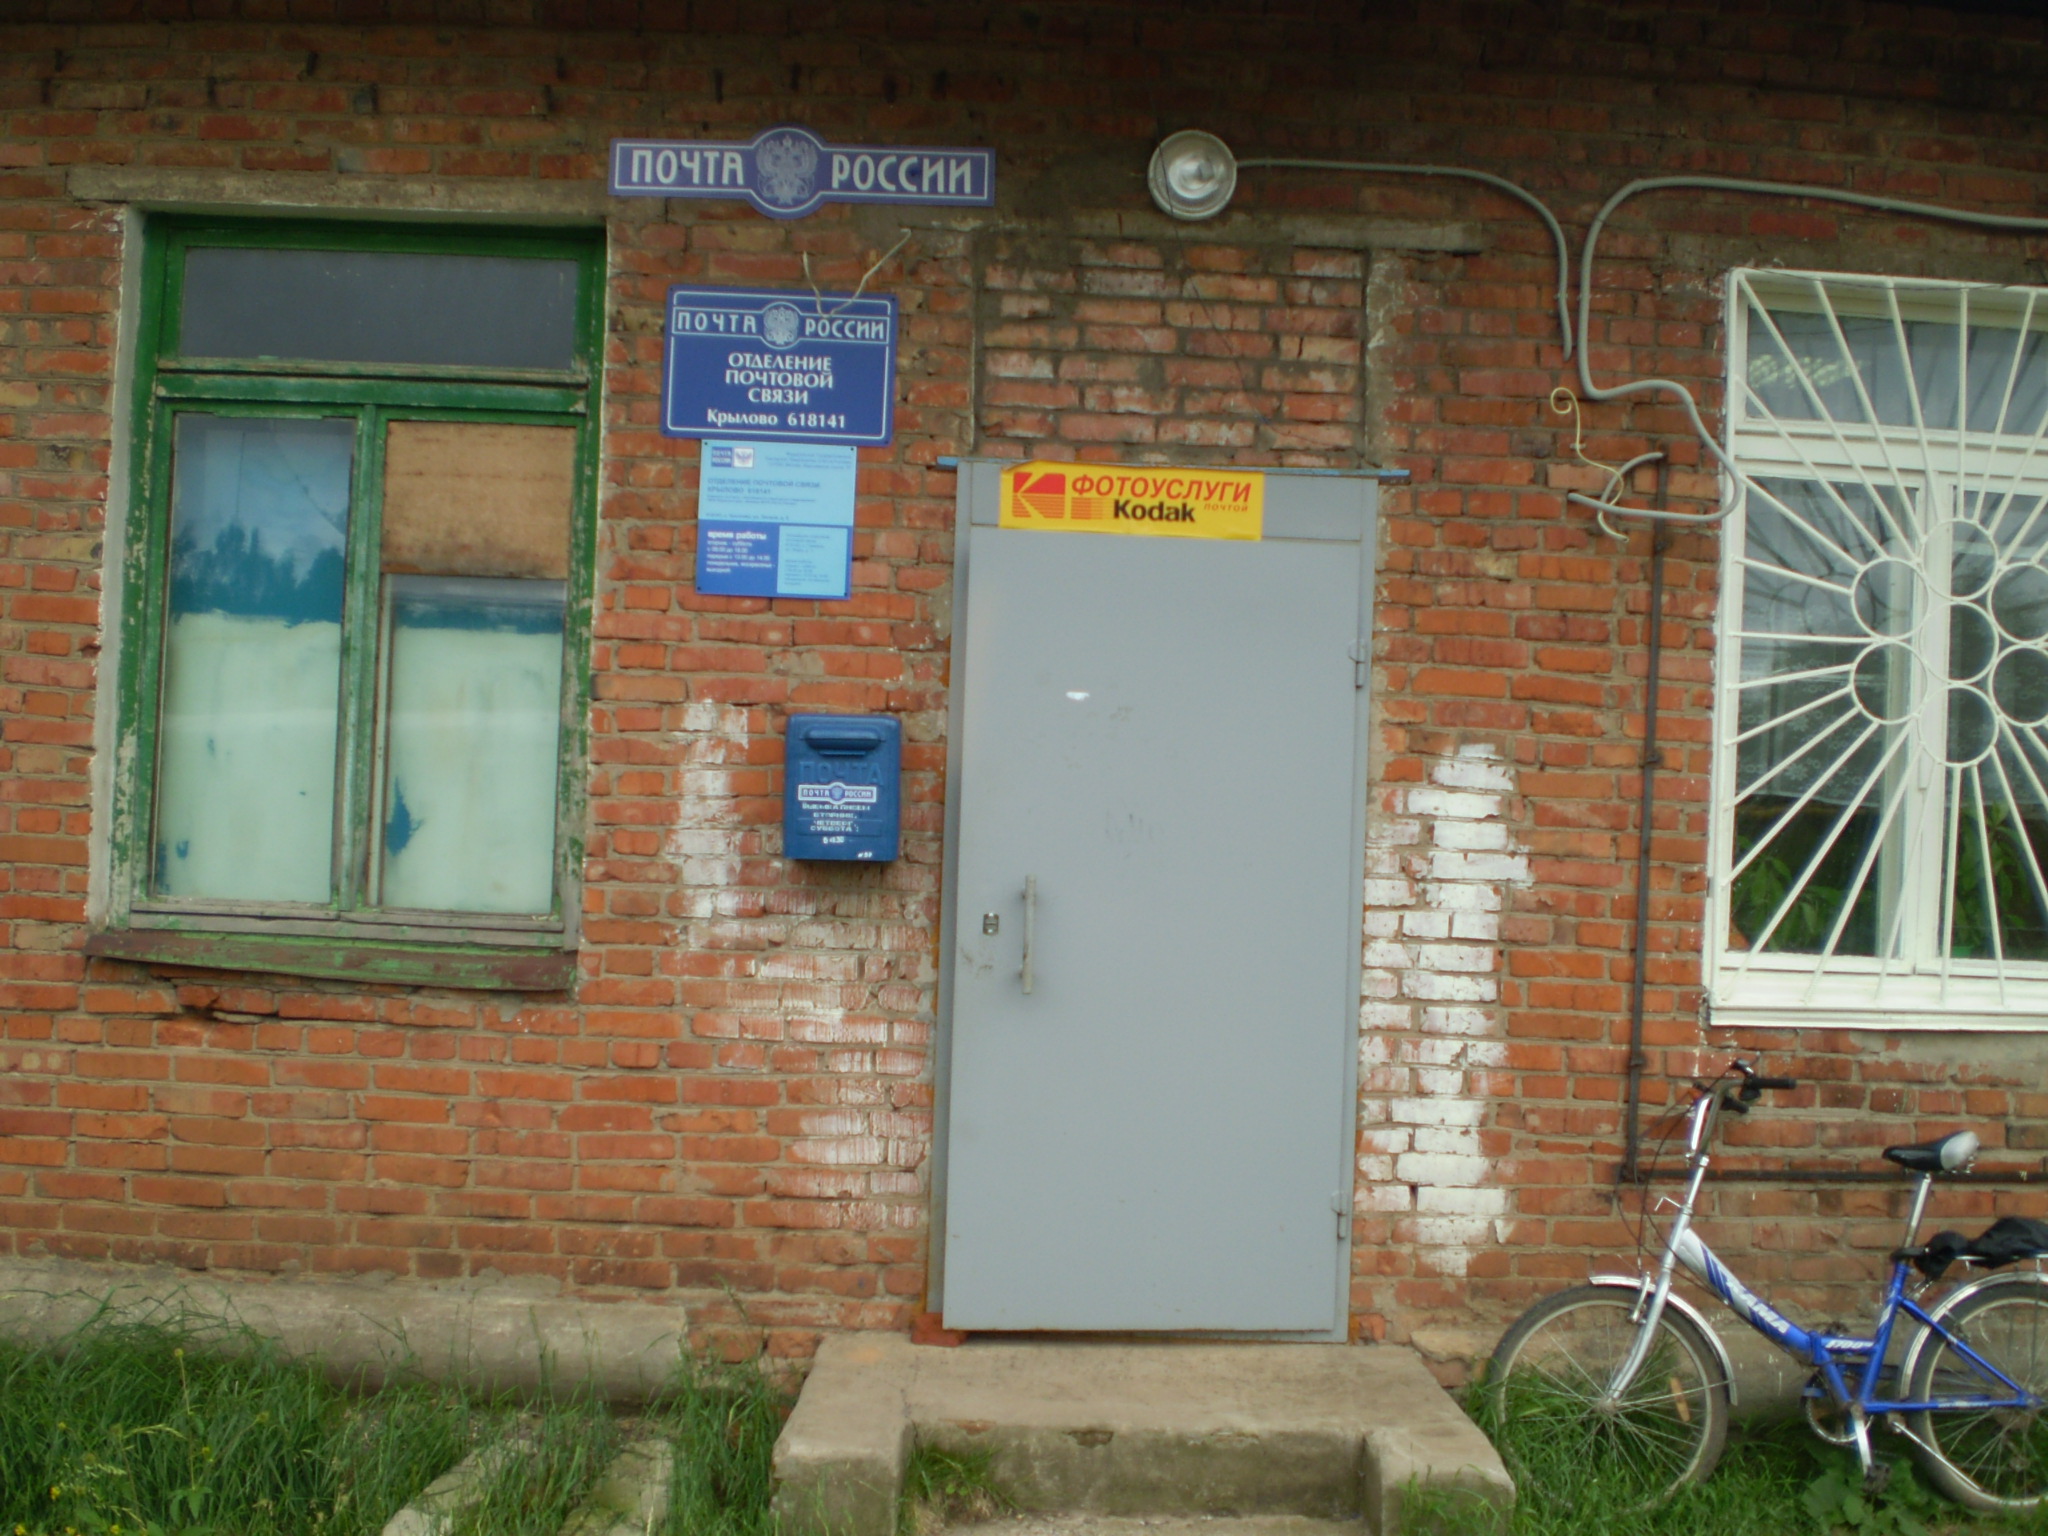 ВХОД, отделение почтовой связи 618141, Пермский край, Осинский р-он, Крылово